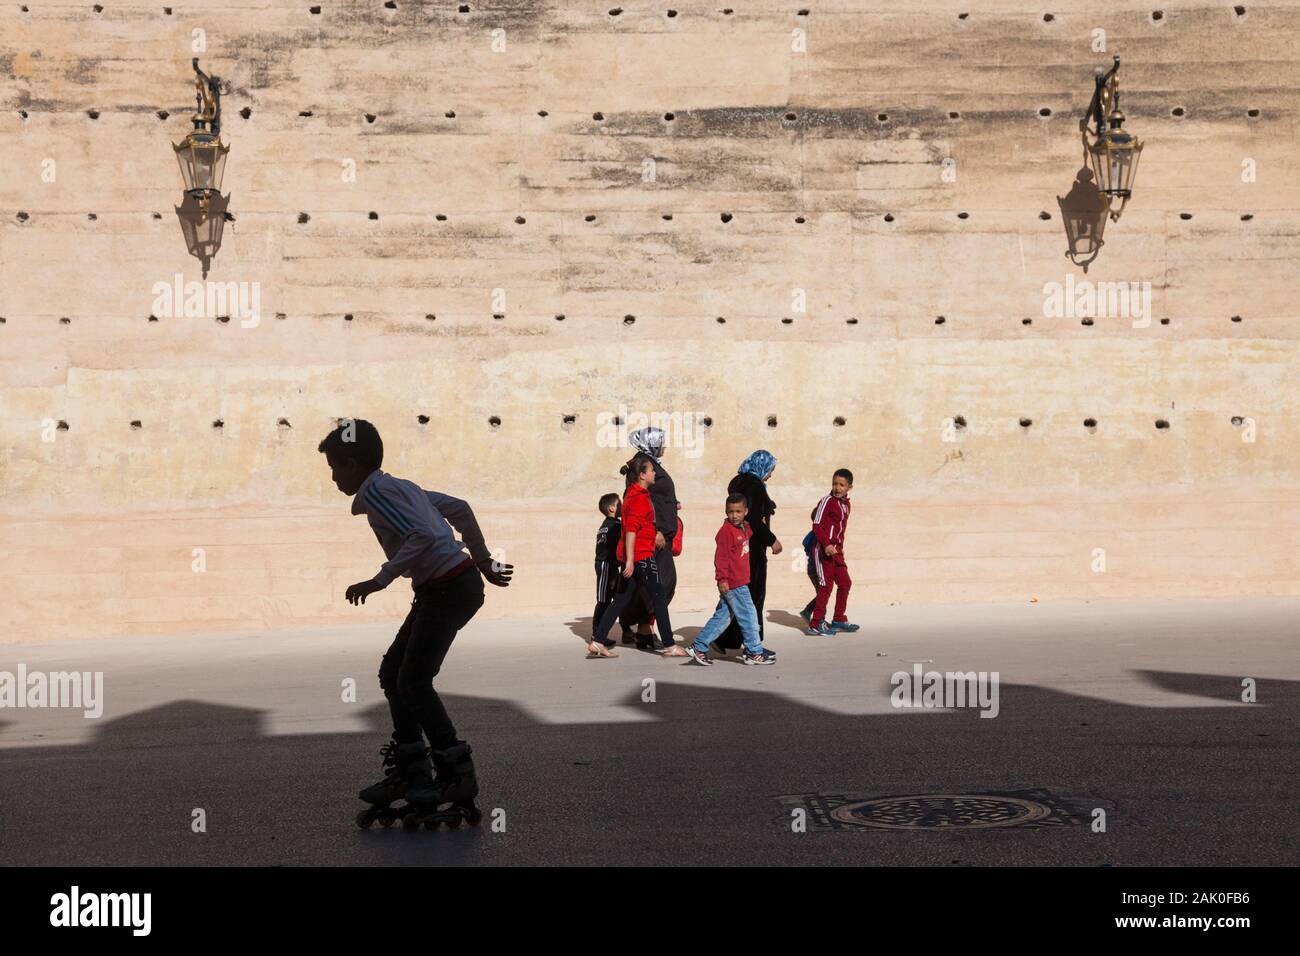 La tradición y la modernidad - boy sobre patines en línea y los peatones (mujeres y niños) en la tarde paisaje de murallas en Fes, Marruecos (fez) Foto de stock